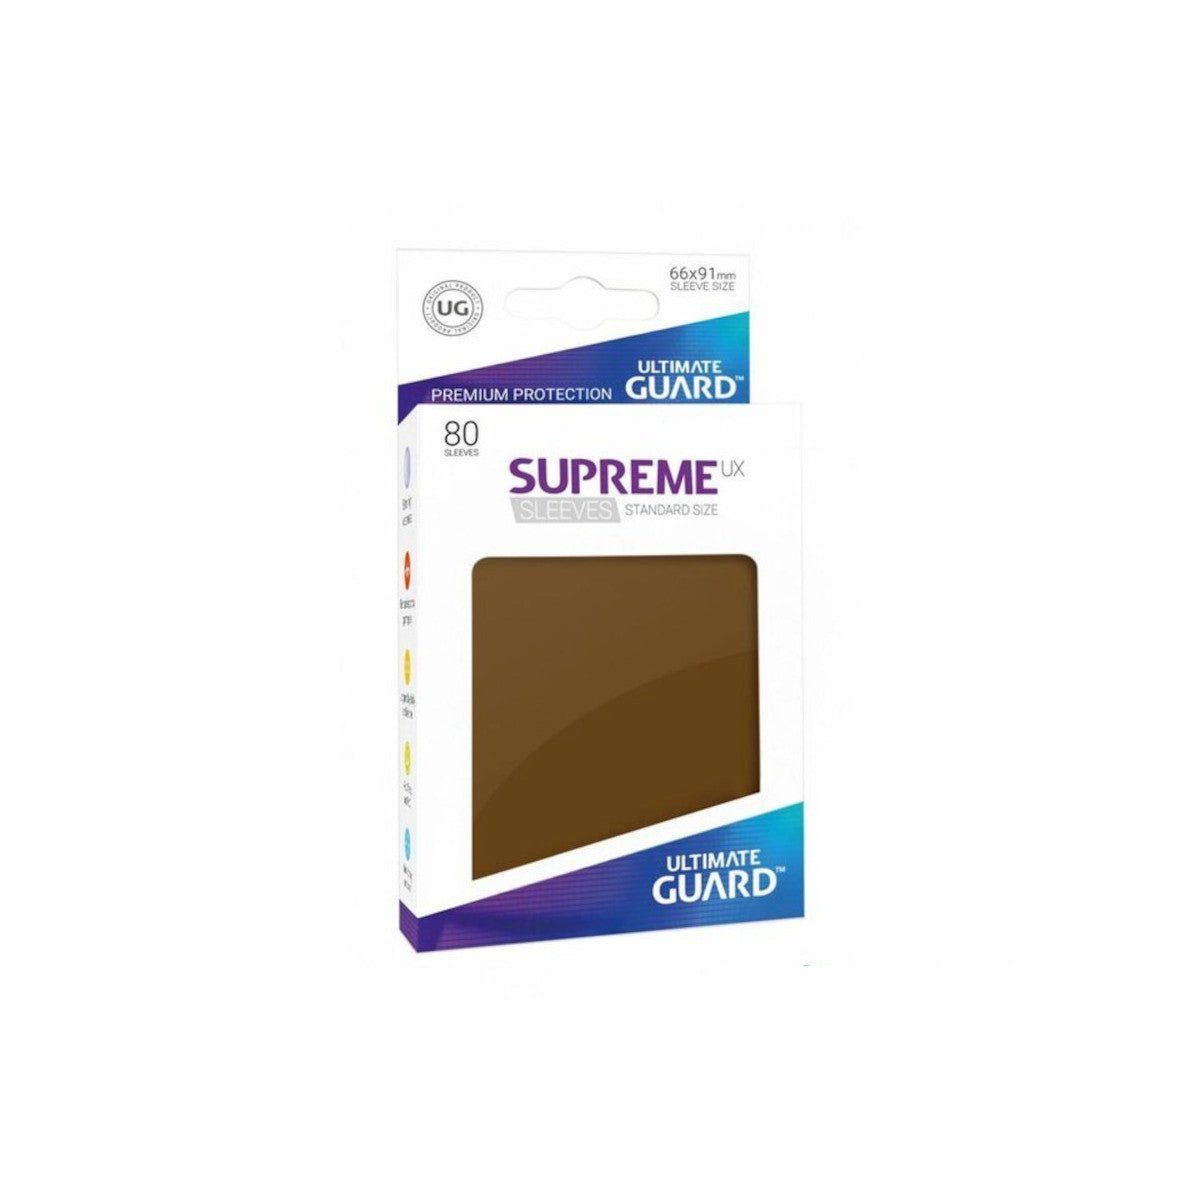 Supreme (80), Standard Sleeves Ultimate Sammelkarte Braun UX Guard